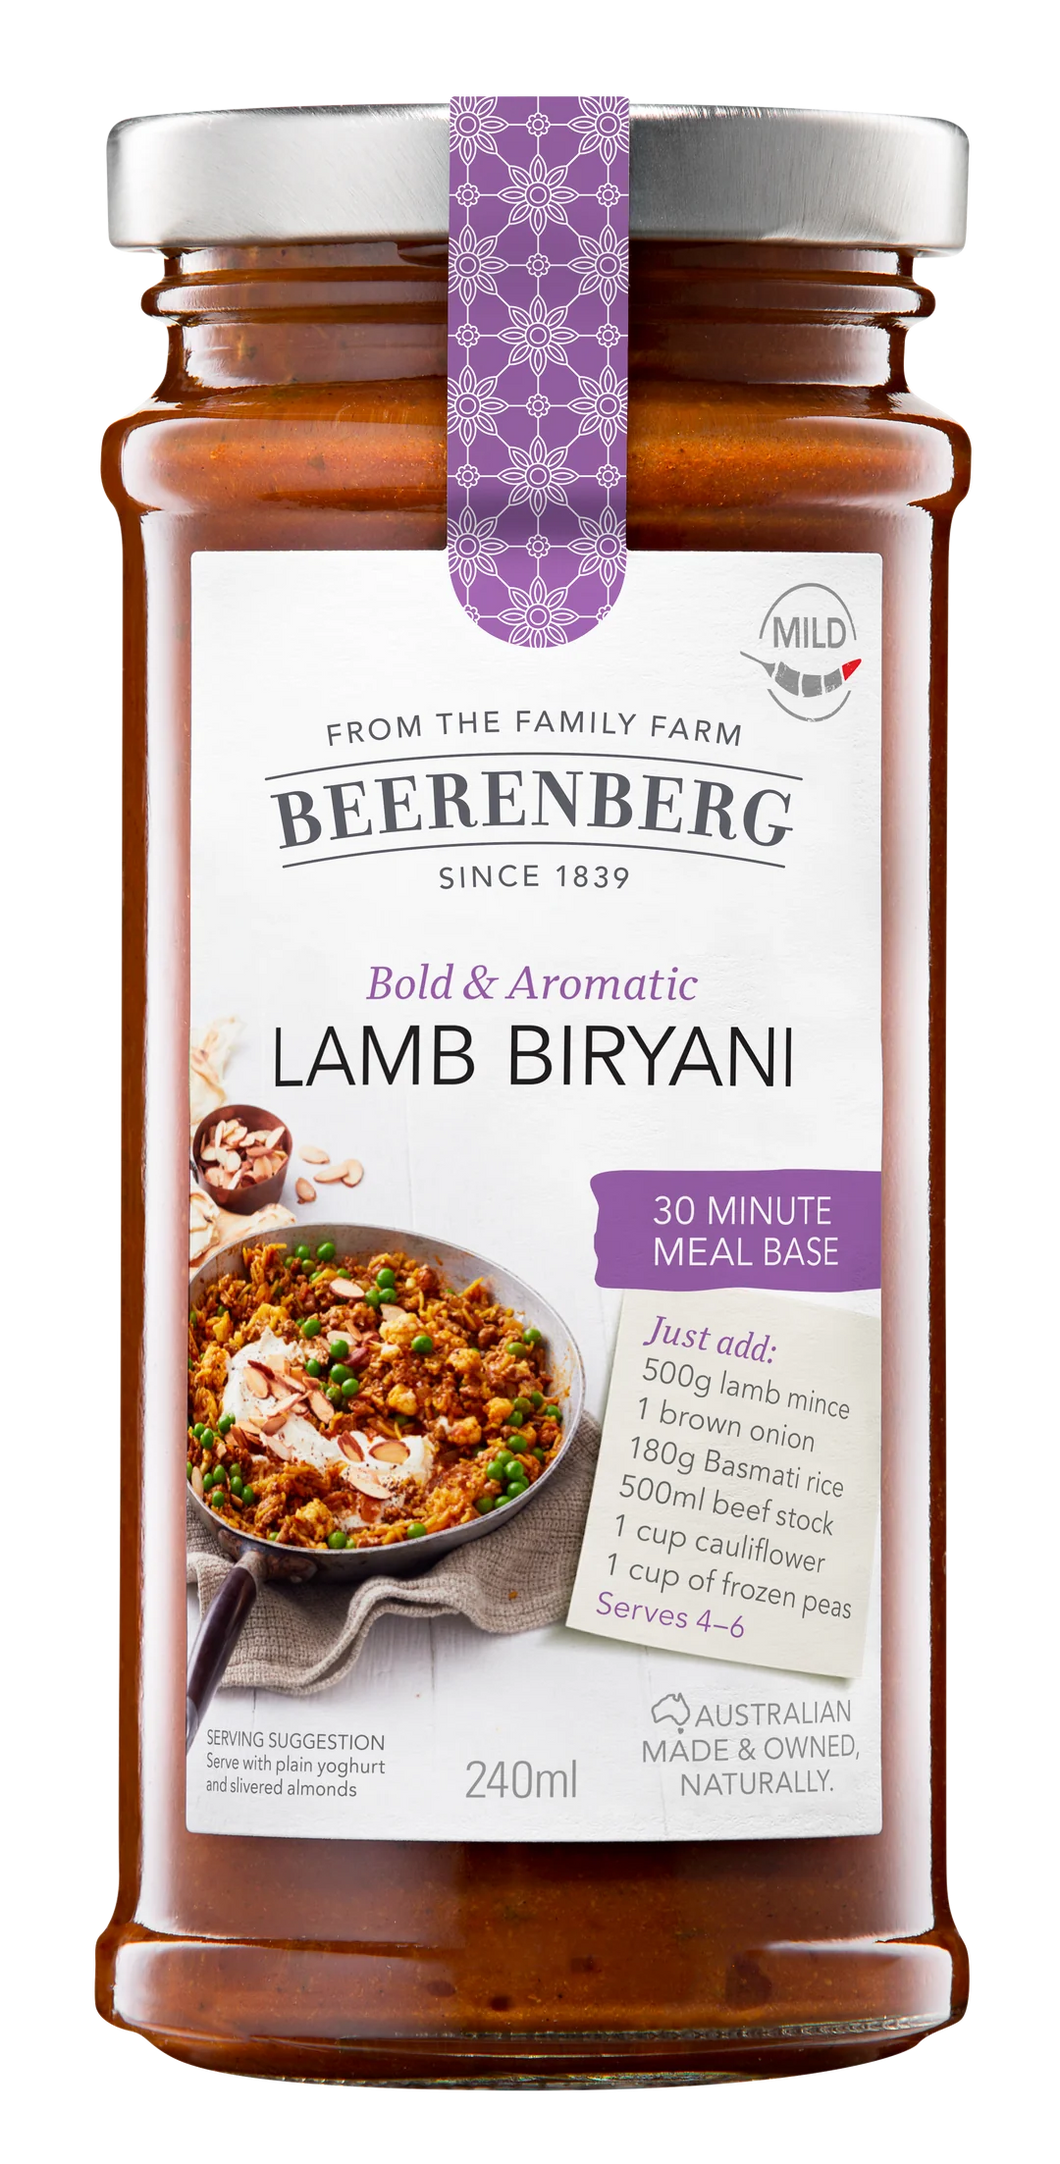 Beerenberg- LAMB BIRYANI 30 MINUTE MEAL BASE